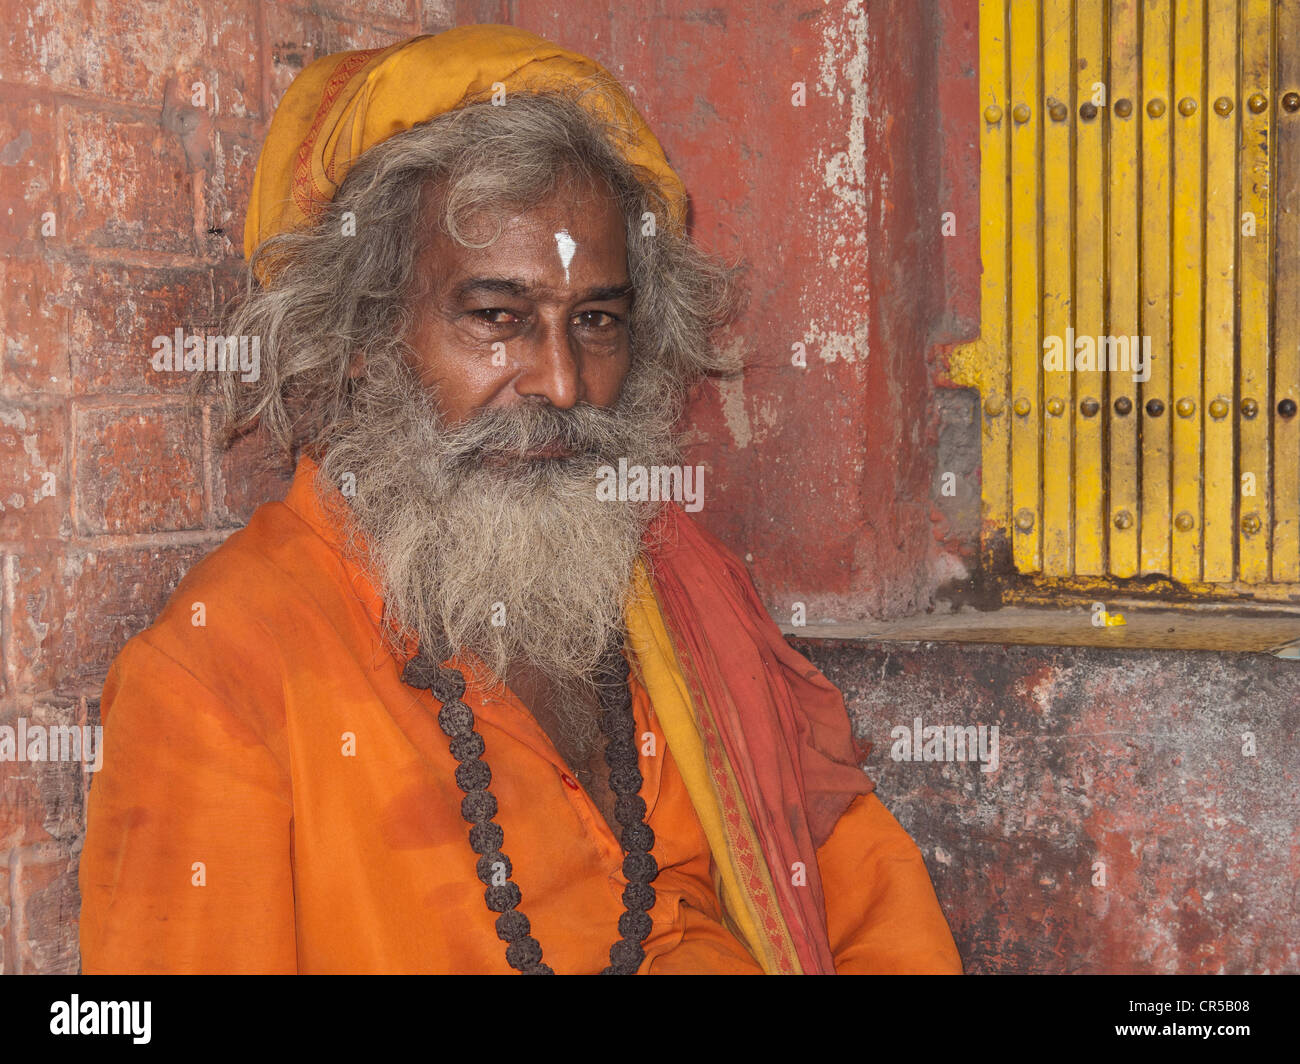 Ein Sadhu, heiliger Mann von Indien, sitzt vor einem kleinen Schrein in den Straßen von New Delhi Stockfoto